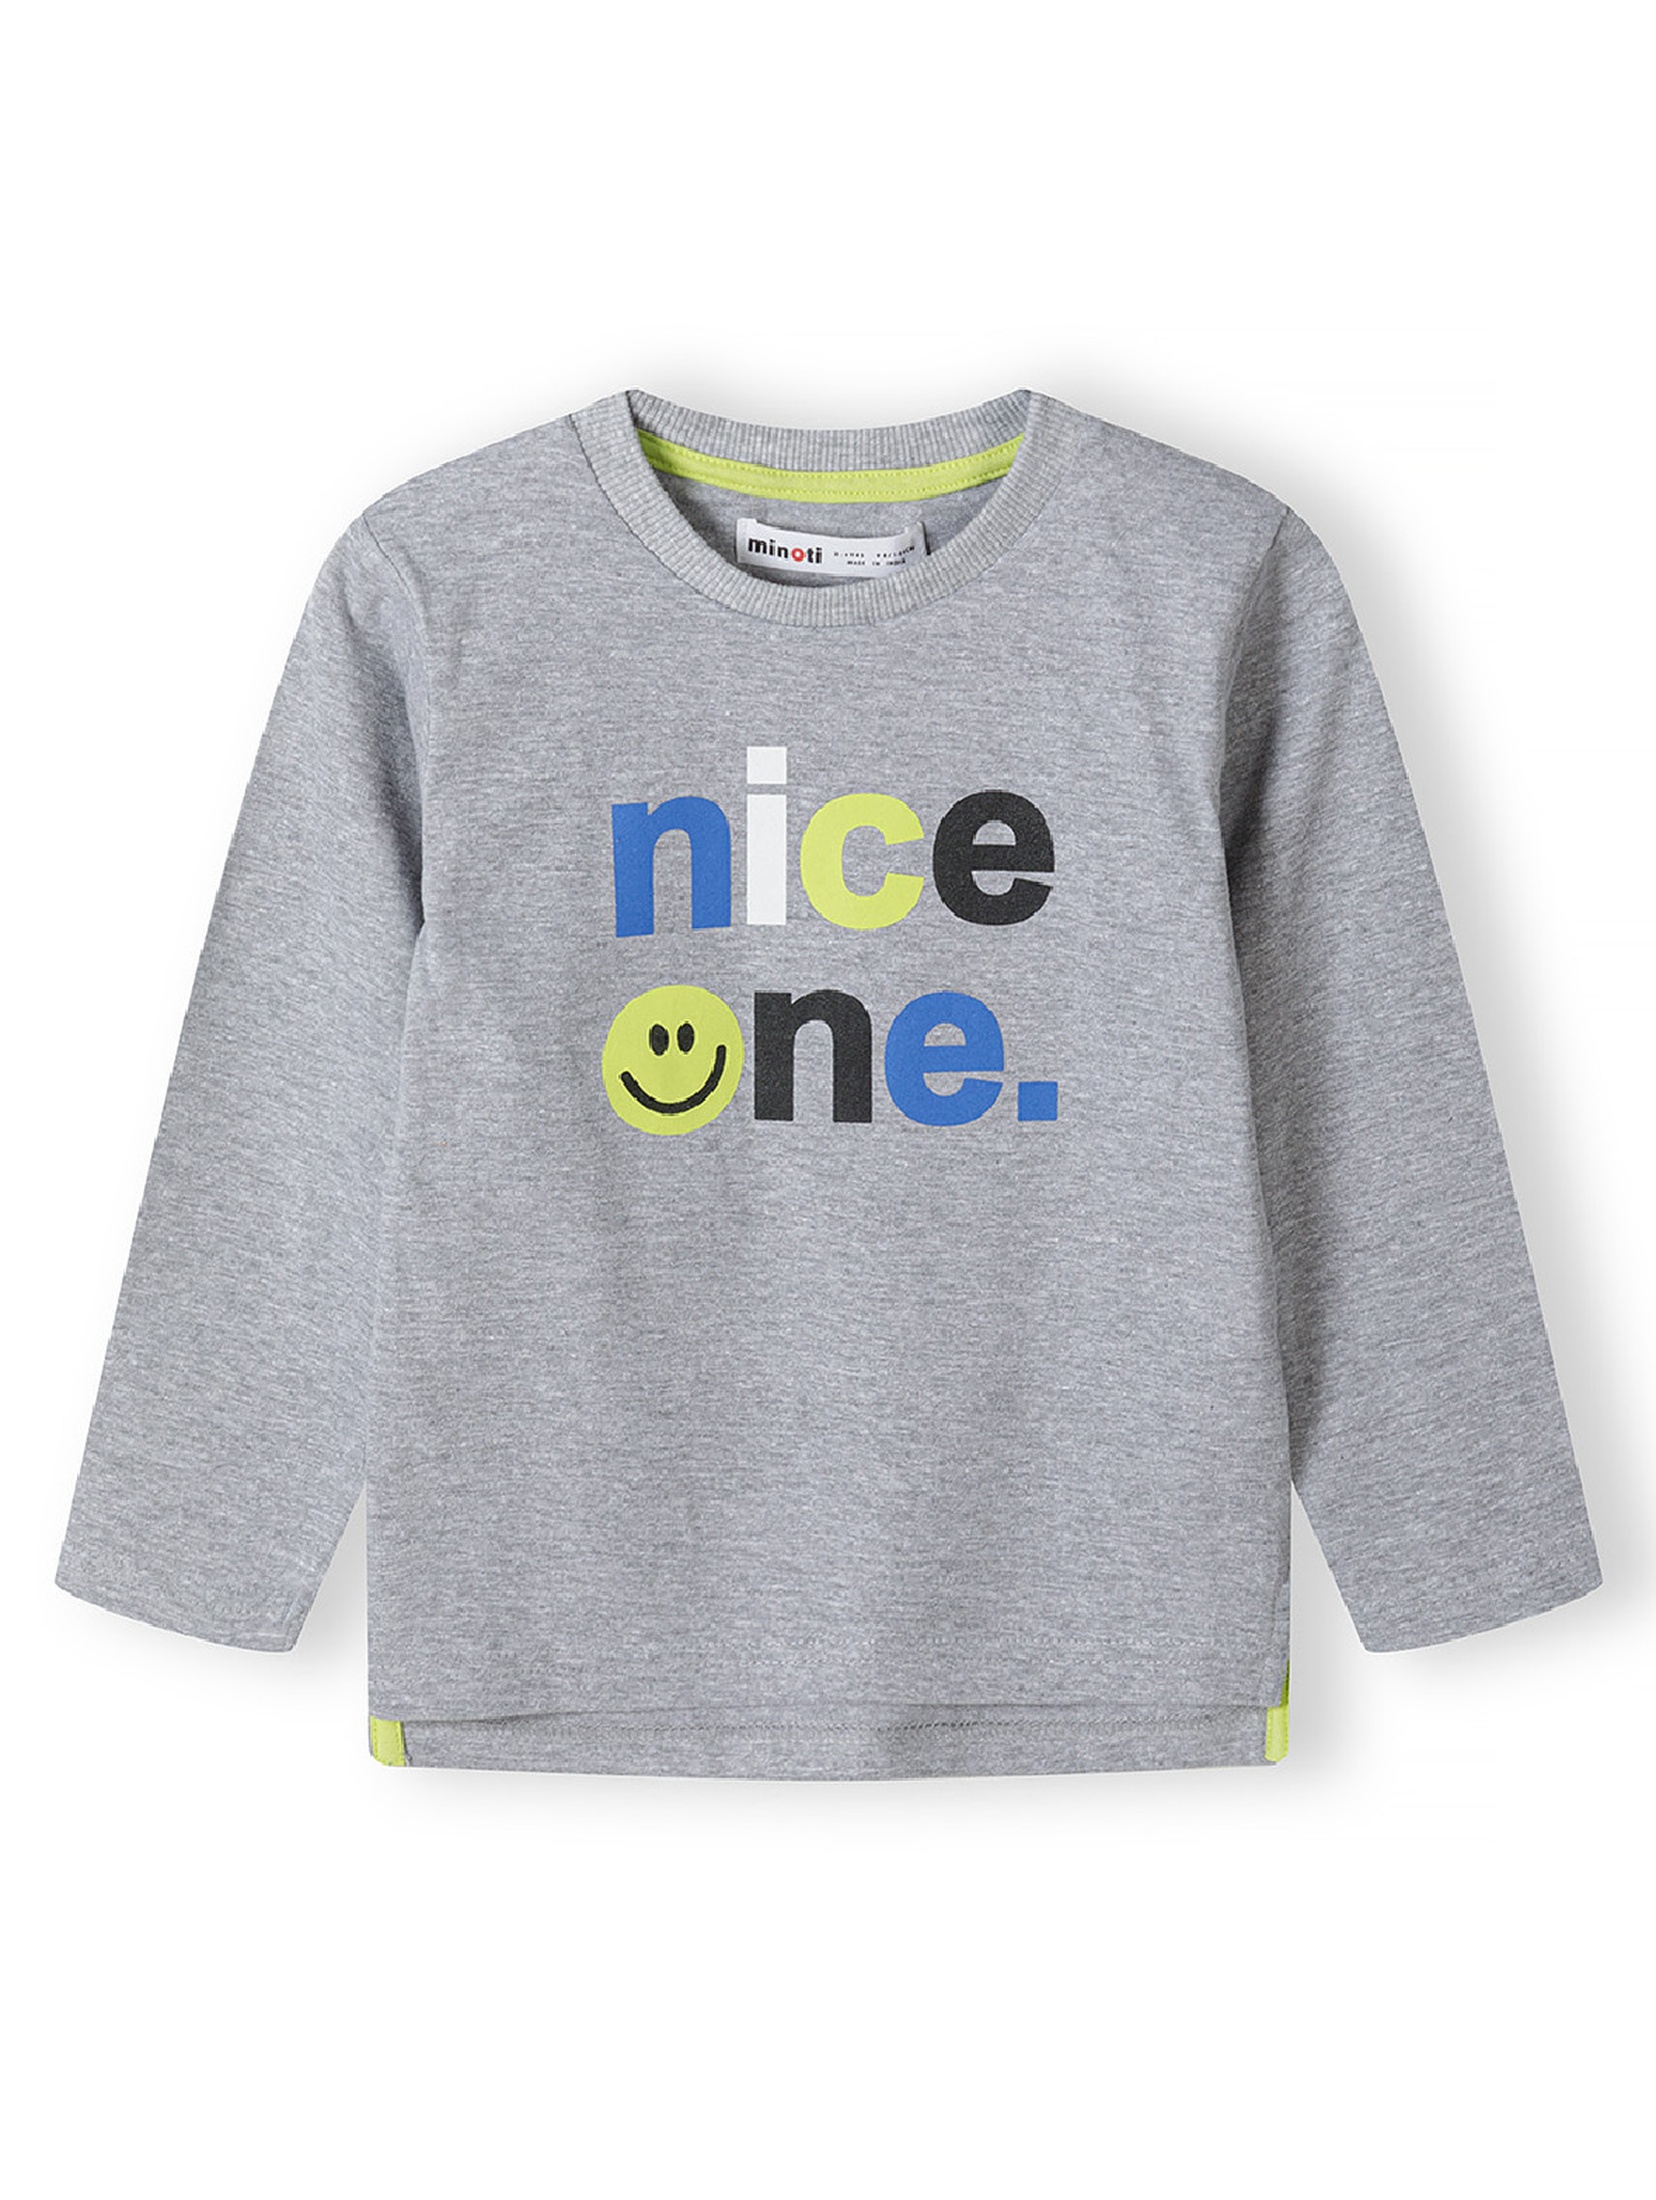 Bluzka niemowlęca szara z długim rękawem i napisem "Nice one"